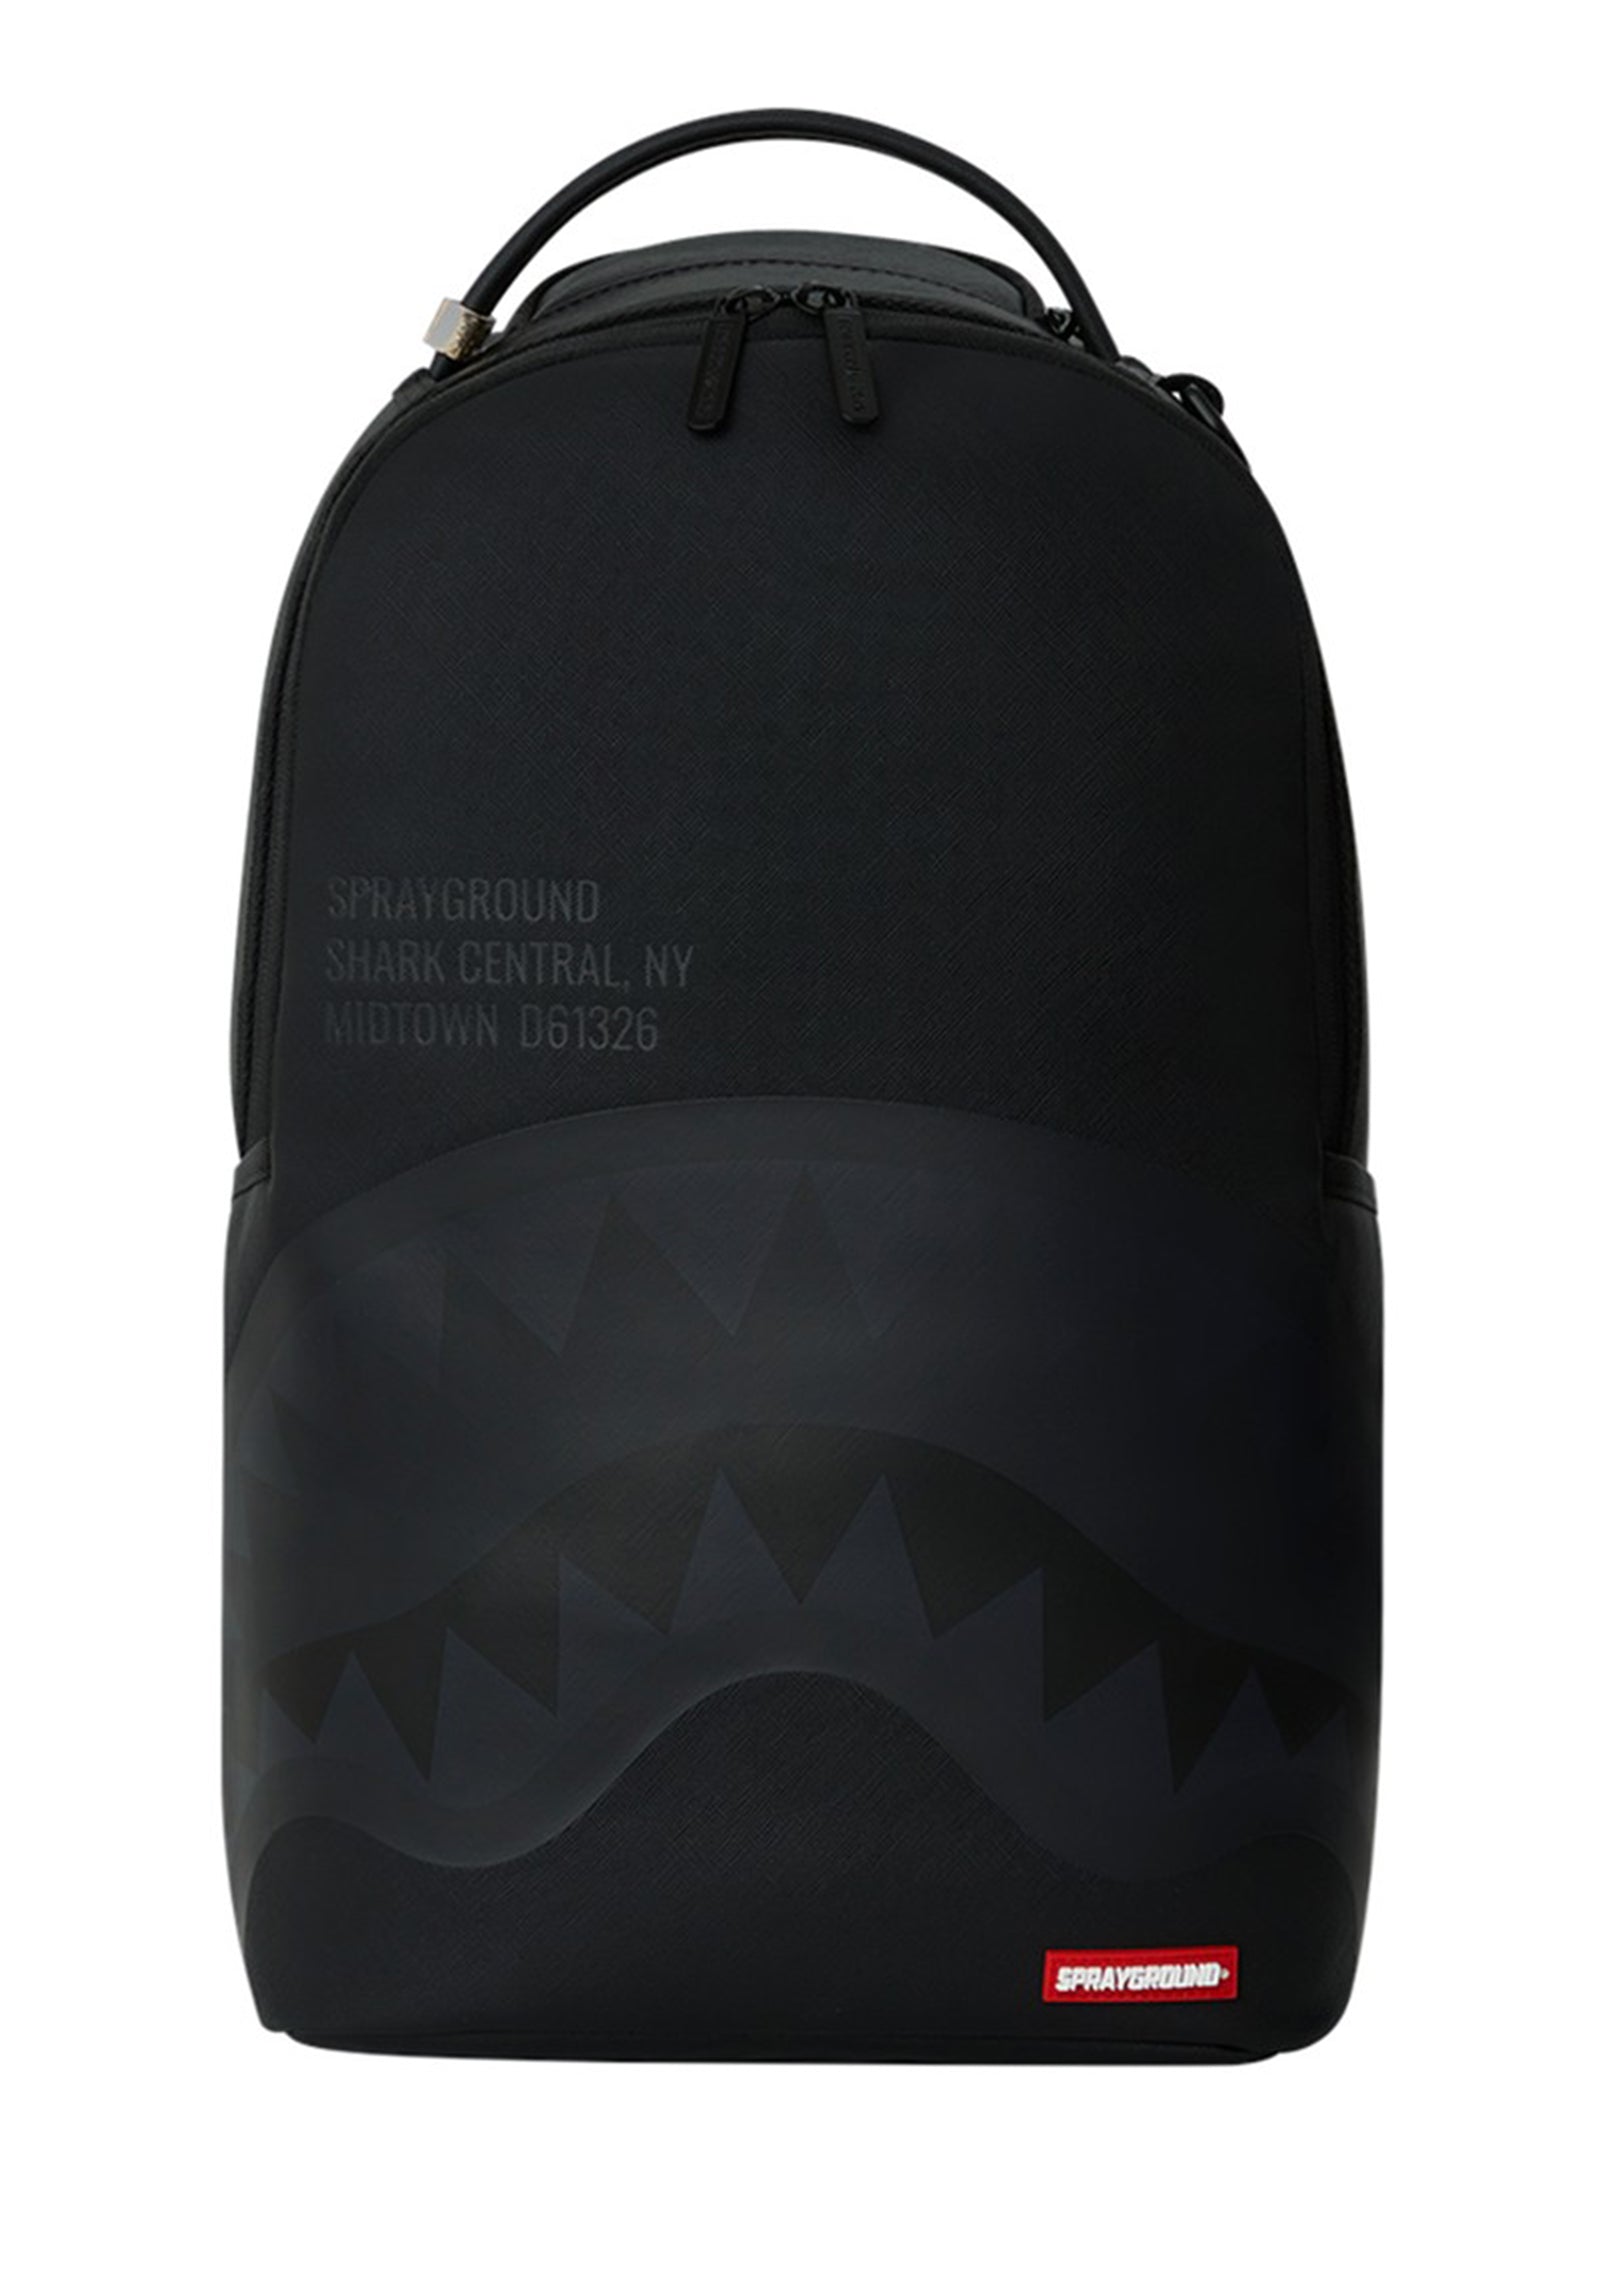 Zaino shark central 2.0 black